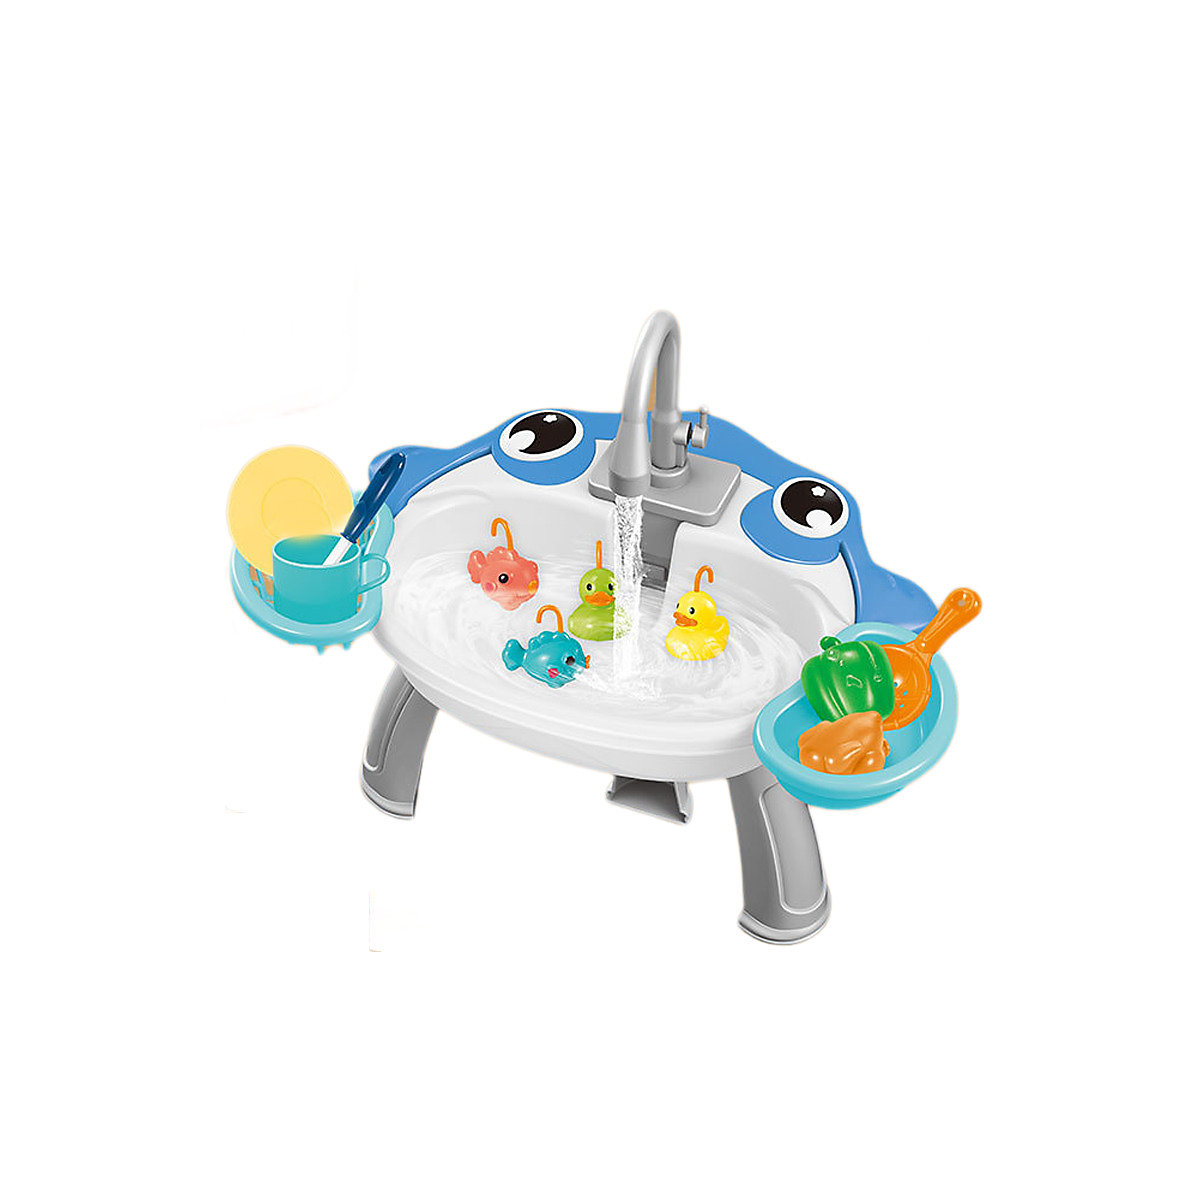 Syntek Angelspiel Set Elektrisch Fischfang Spielzeug Multifunktionales Waschbecken mit Angelzugang